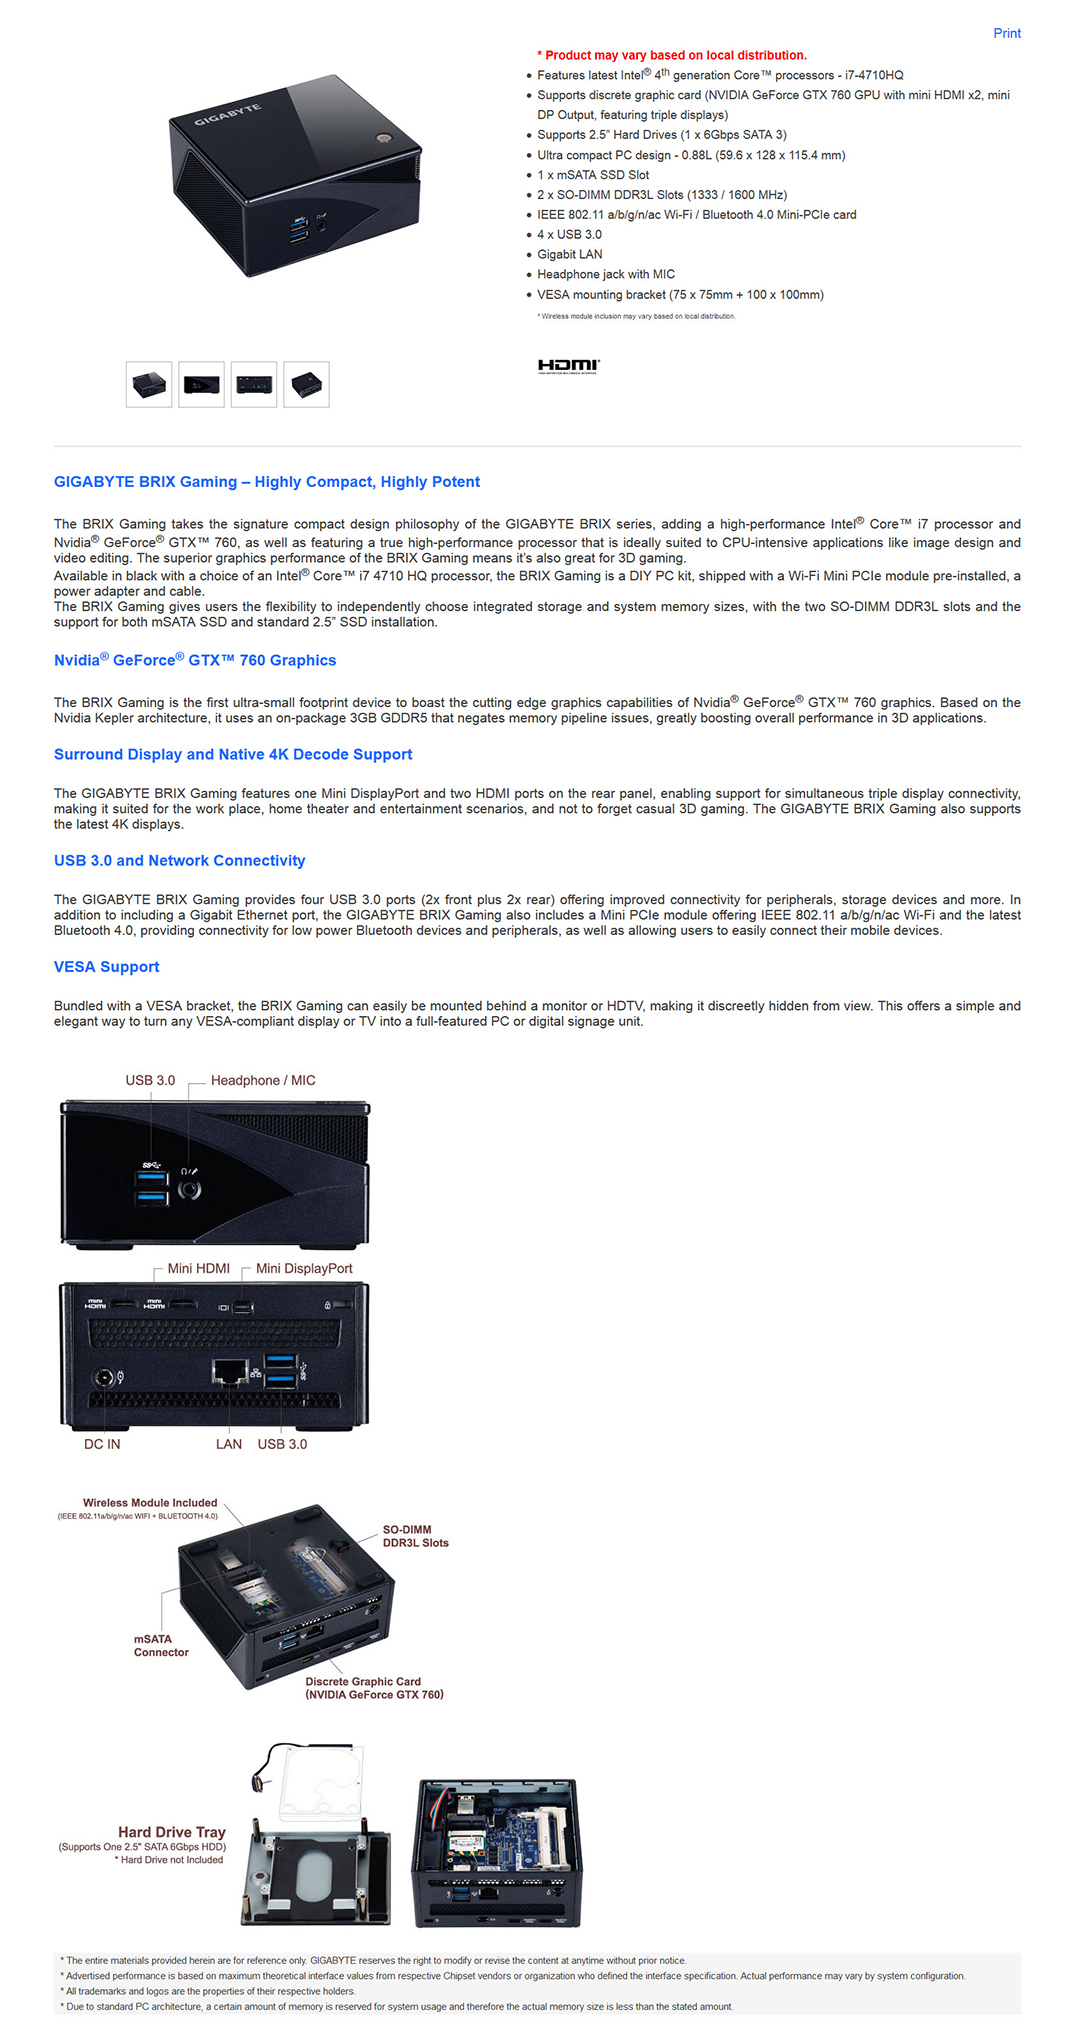 GIGABYTE BRIX Gaming Ultra Compact PC kit GB-BXi7G3-760 ,GIGABYTE BRIX  Gaming Ultra Compact PC kit GB-BXi7G3-760  à¹€à¸¥à¹‡à¸à¹à¸£à¸‡à¹à¸šà¸šà¸ˆà¸±à¸”à¹€à¸•à¹‡à¸¡à¸„à¸£à¸šà¸„à¸£à¸±à¸™à¸”à¹‰à¸§à¸¢à¸Ÿà¸µà¹€à¸ˆà¸­à¸£à¹Œà¹€à¸žà¸·à¹ˆà¸­à¸„à¸­à¹€à¸à¸¡à¸ªà¹